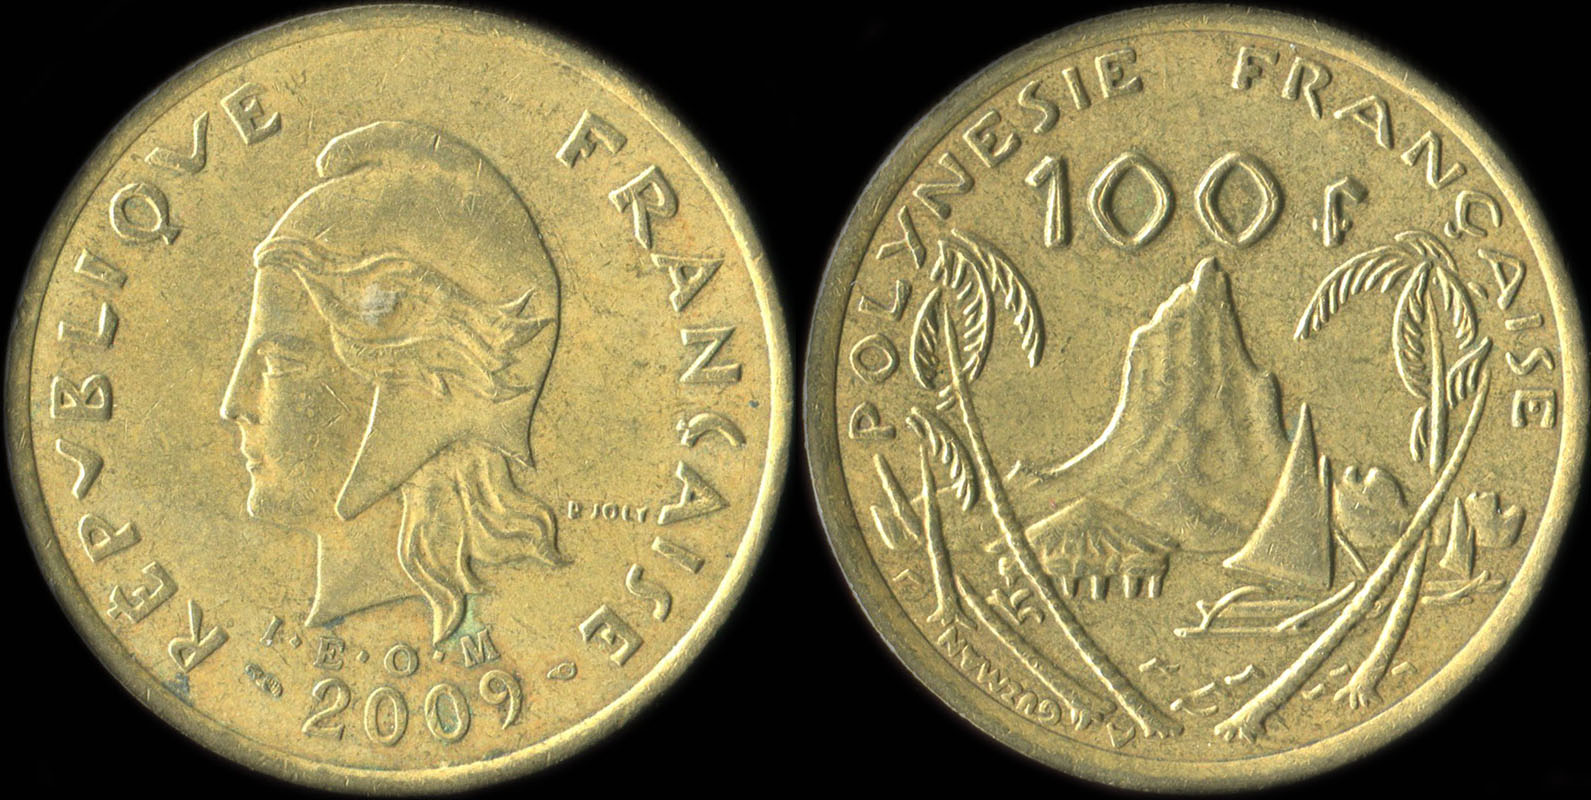 Pièce de 100 francs 2009 - I.E.O.M. Polynésie française